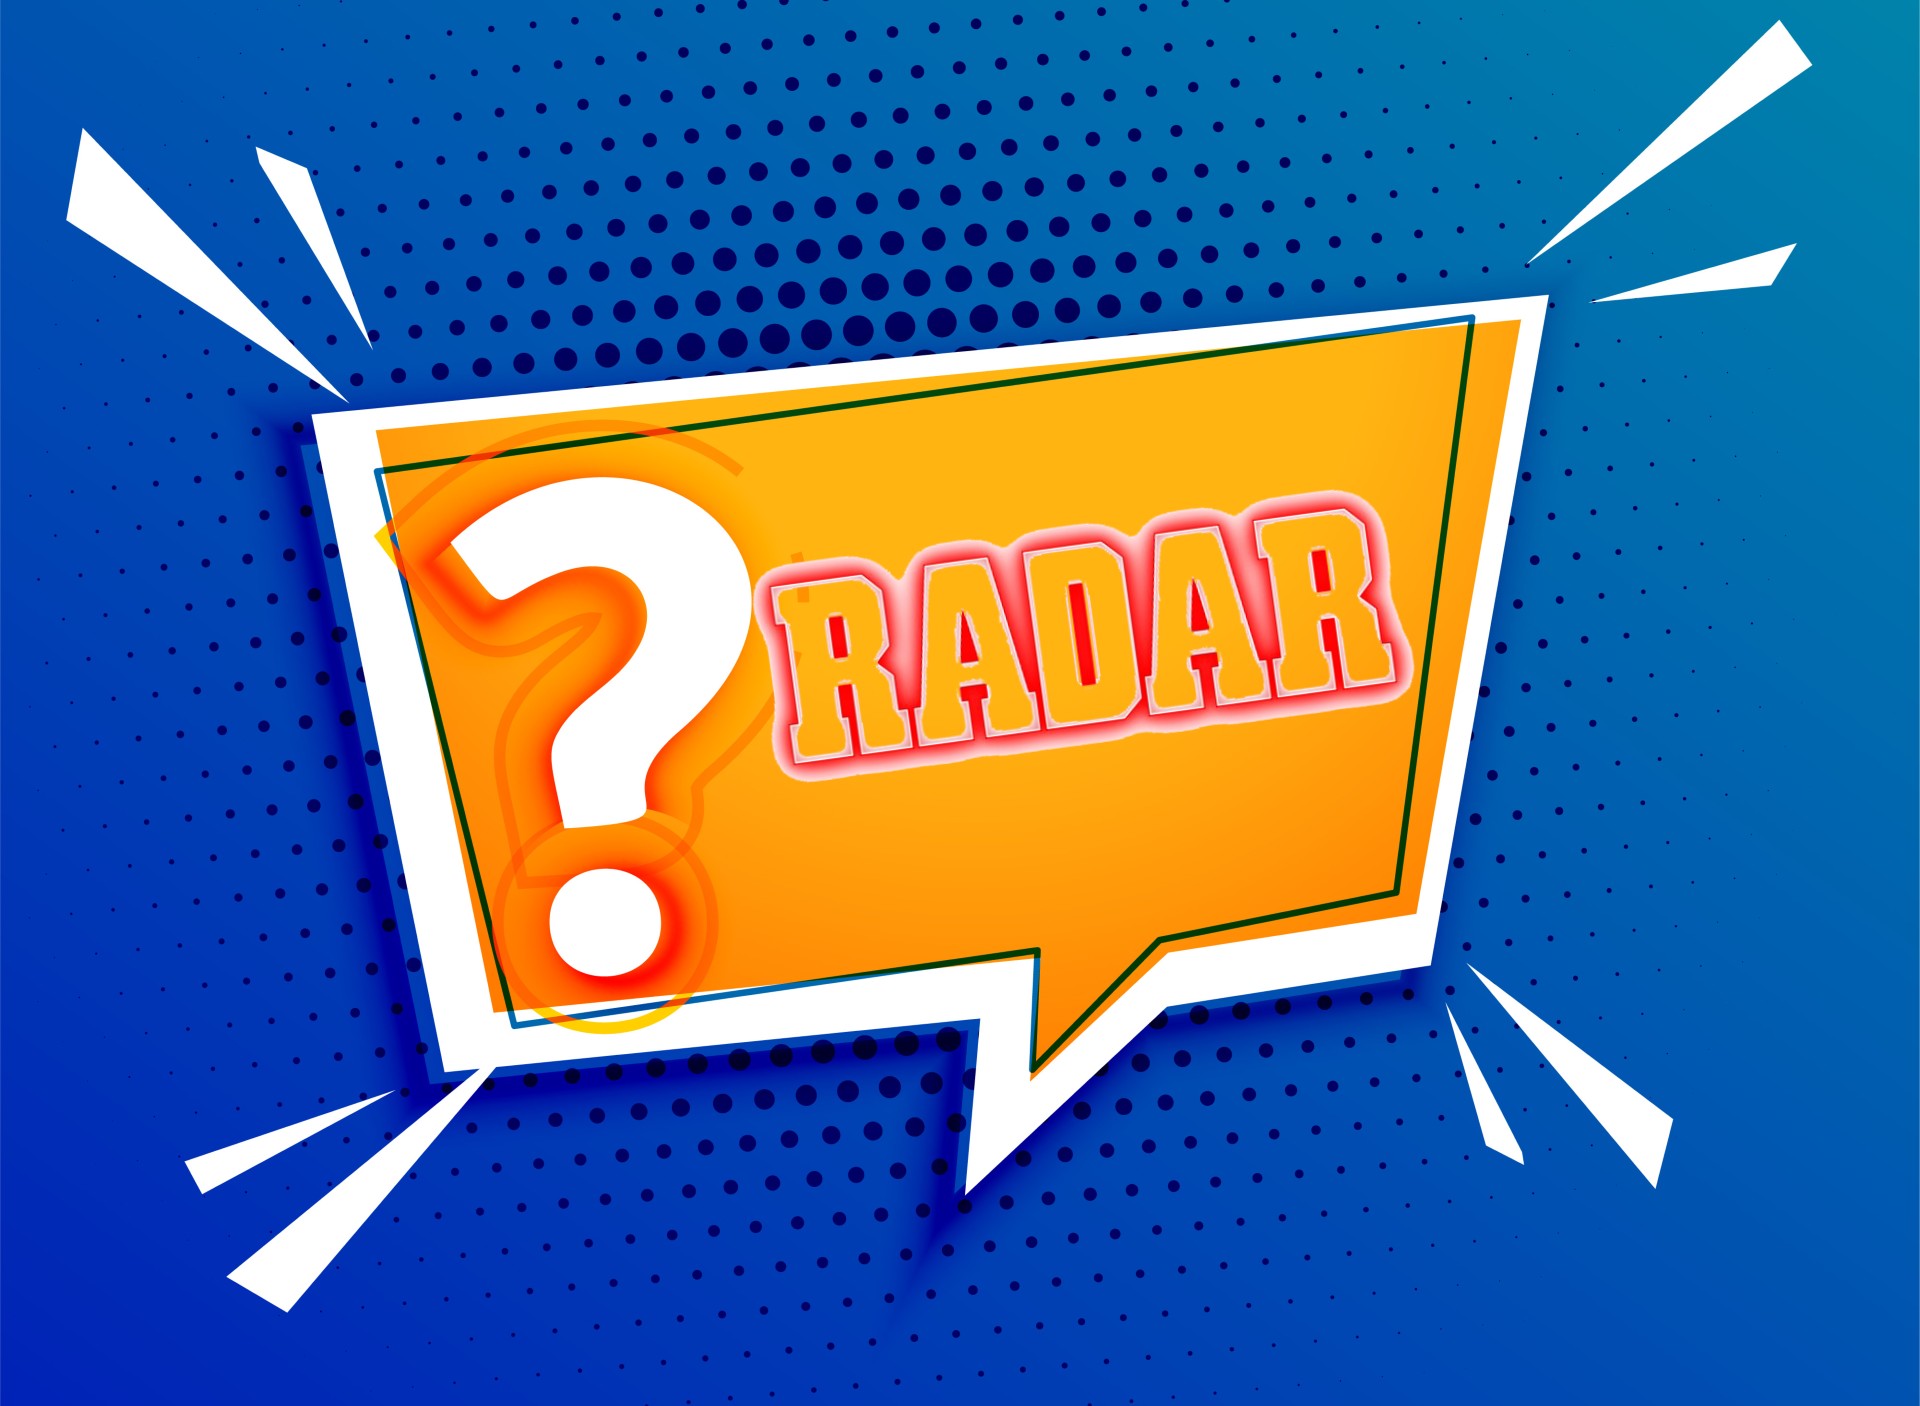 Οικονομικά – επιχειρηματικά – χρηματιστηριακά και πολιτικά κουίζ που δίνουν το σφυγμό της εβδομάδας που έκλεισε μέσα από τη ματιά του Radar!